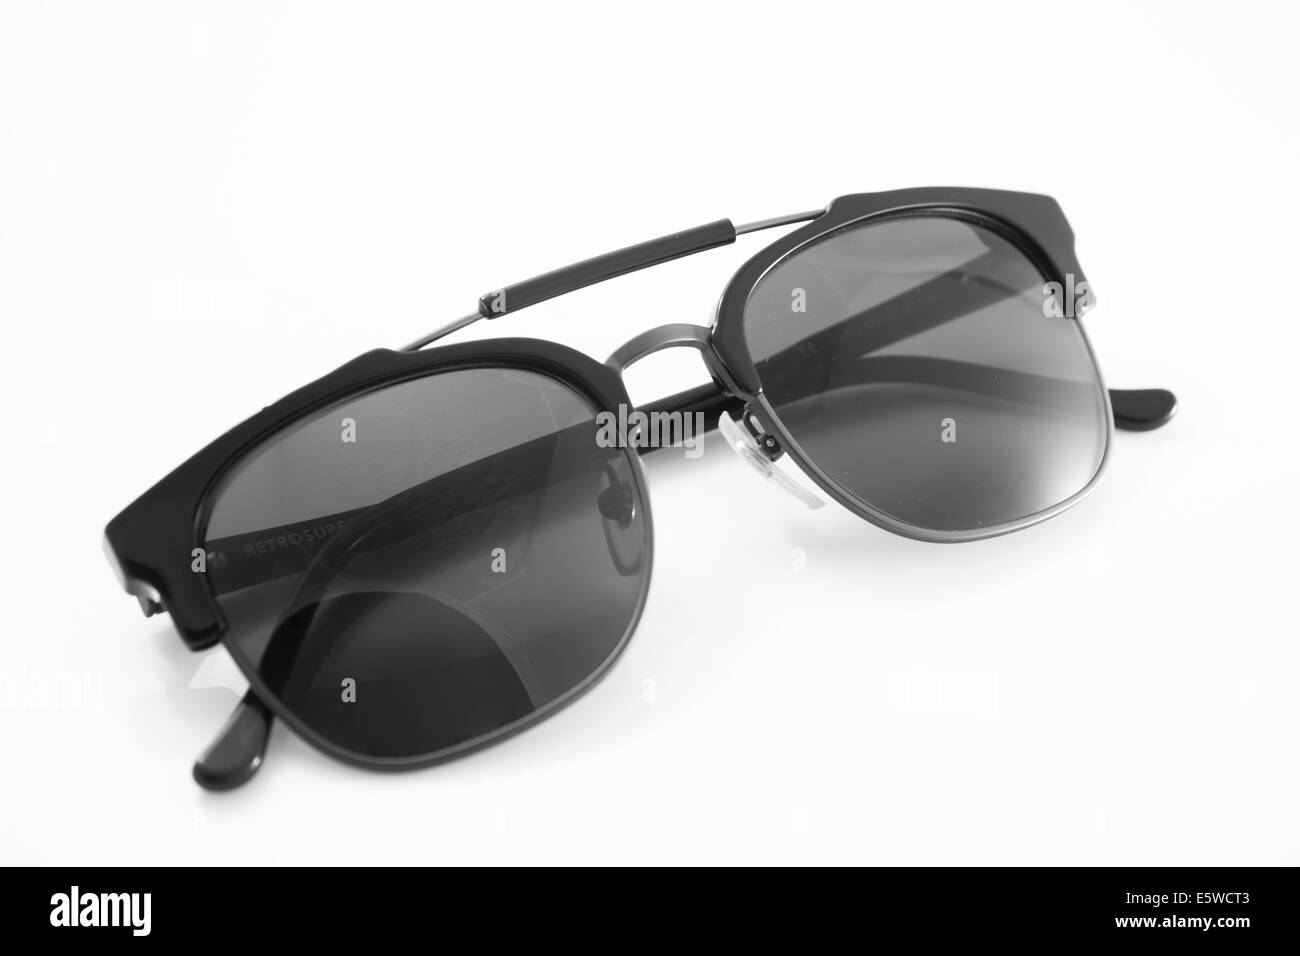 Noir unisexe lunettes moderne isolé sur fond blanc, stock photo Banque D'Images